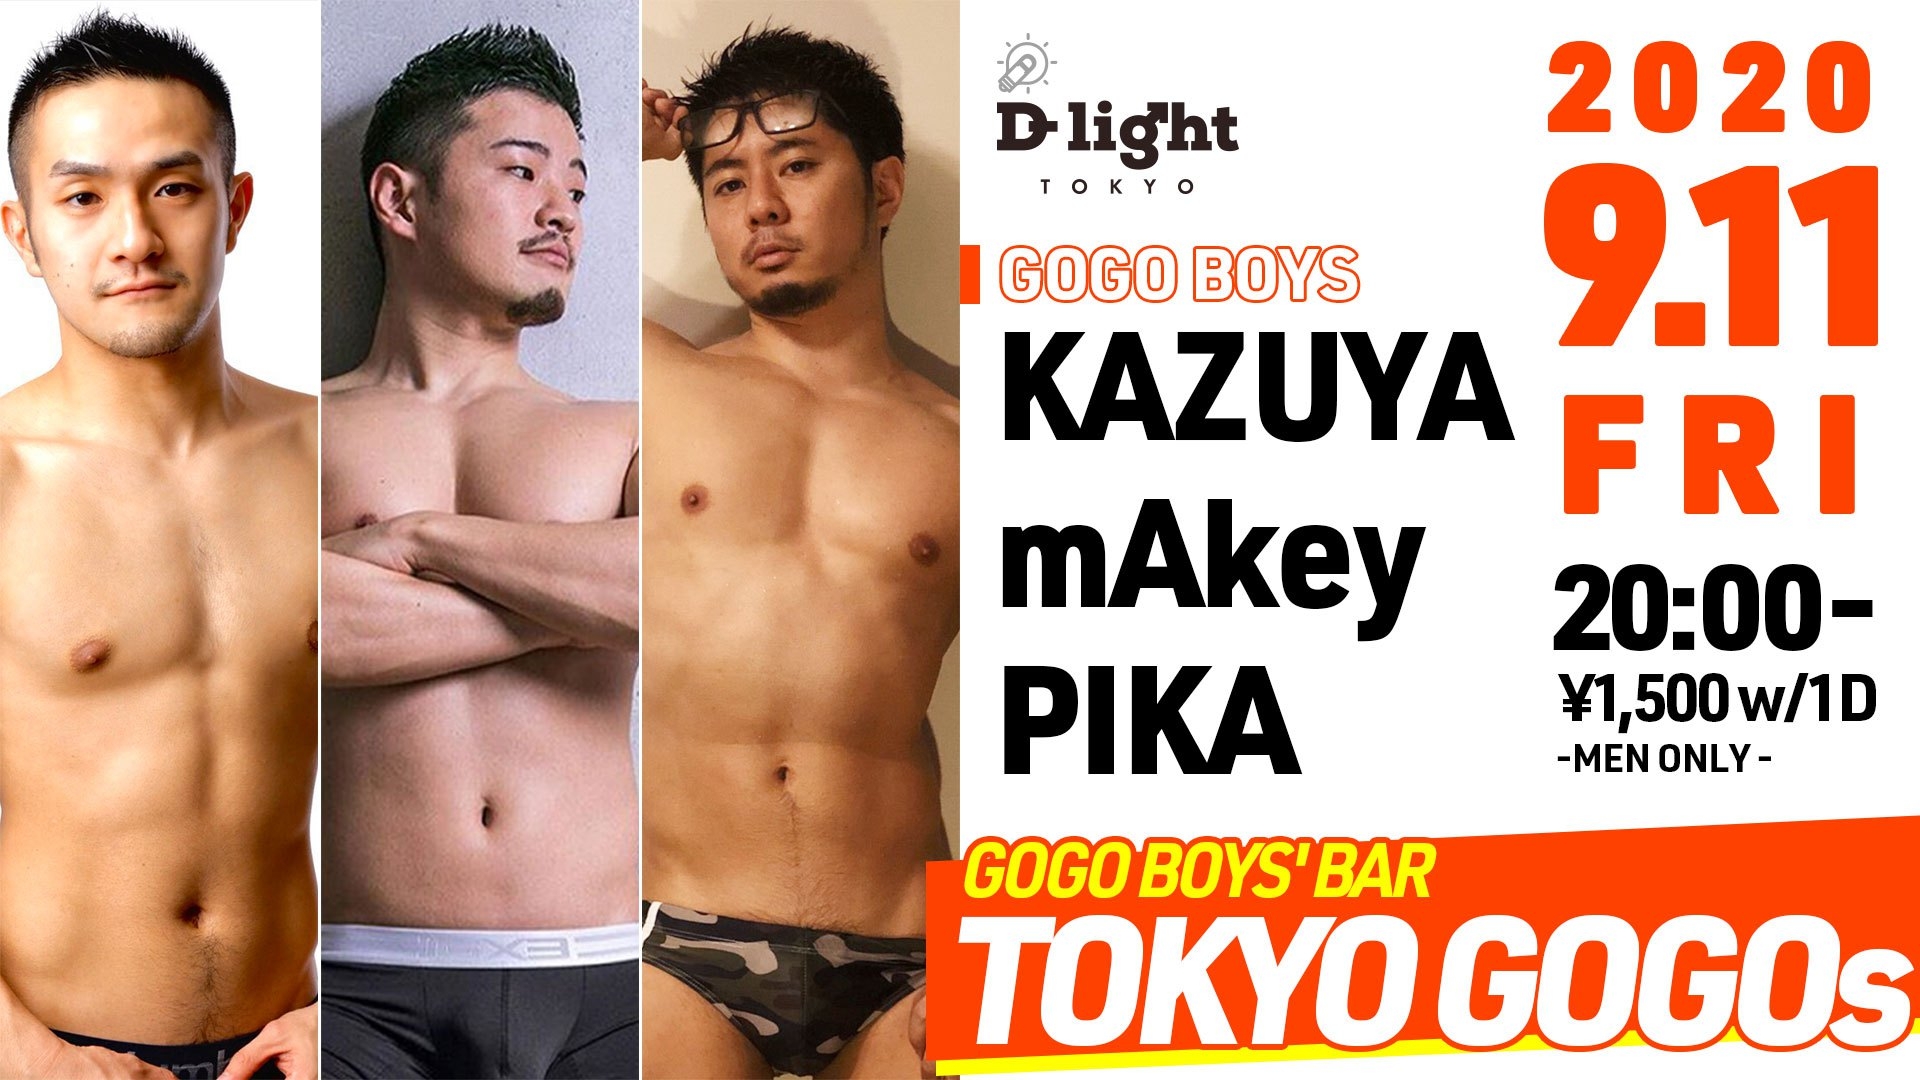 GOGO BOYS' BAR "TOKYO GOGOS"